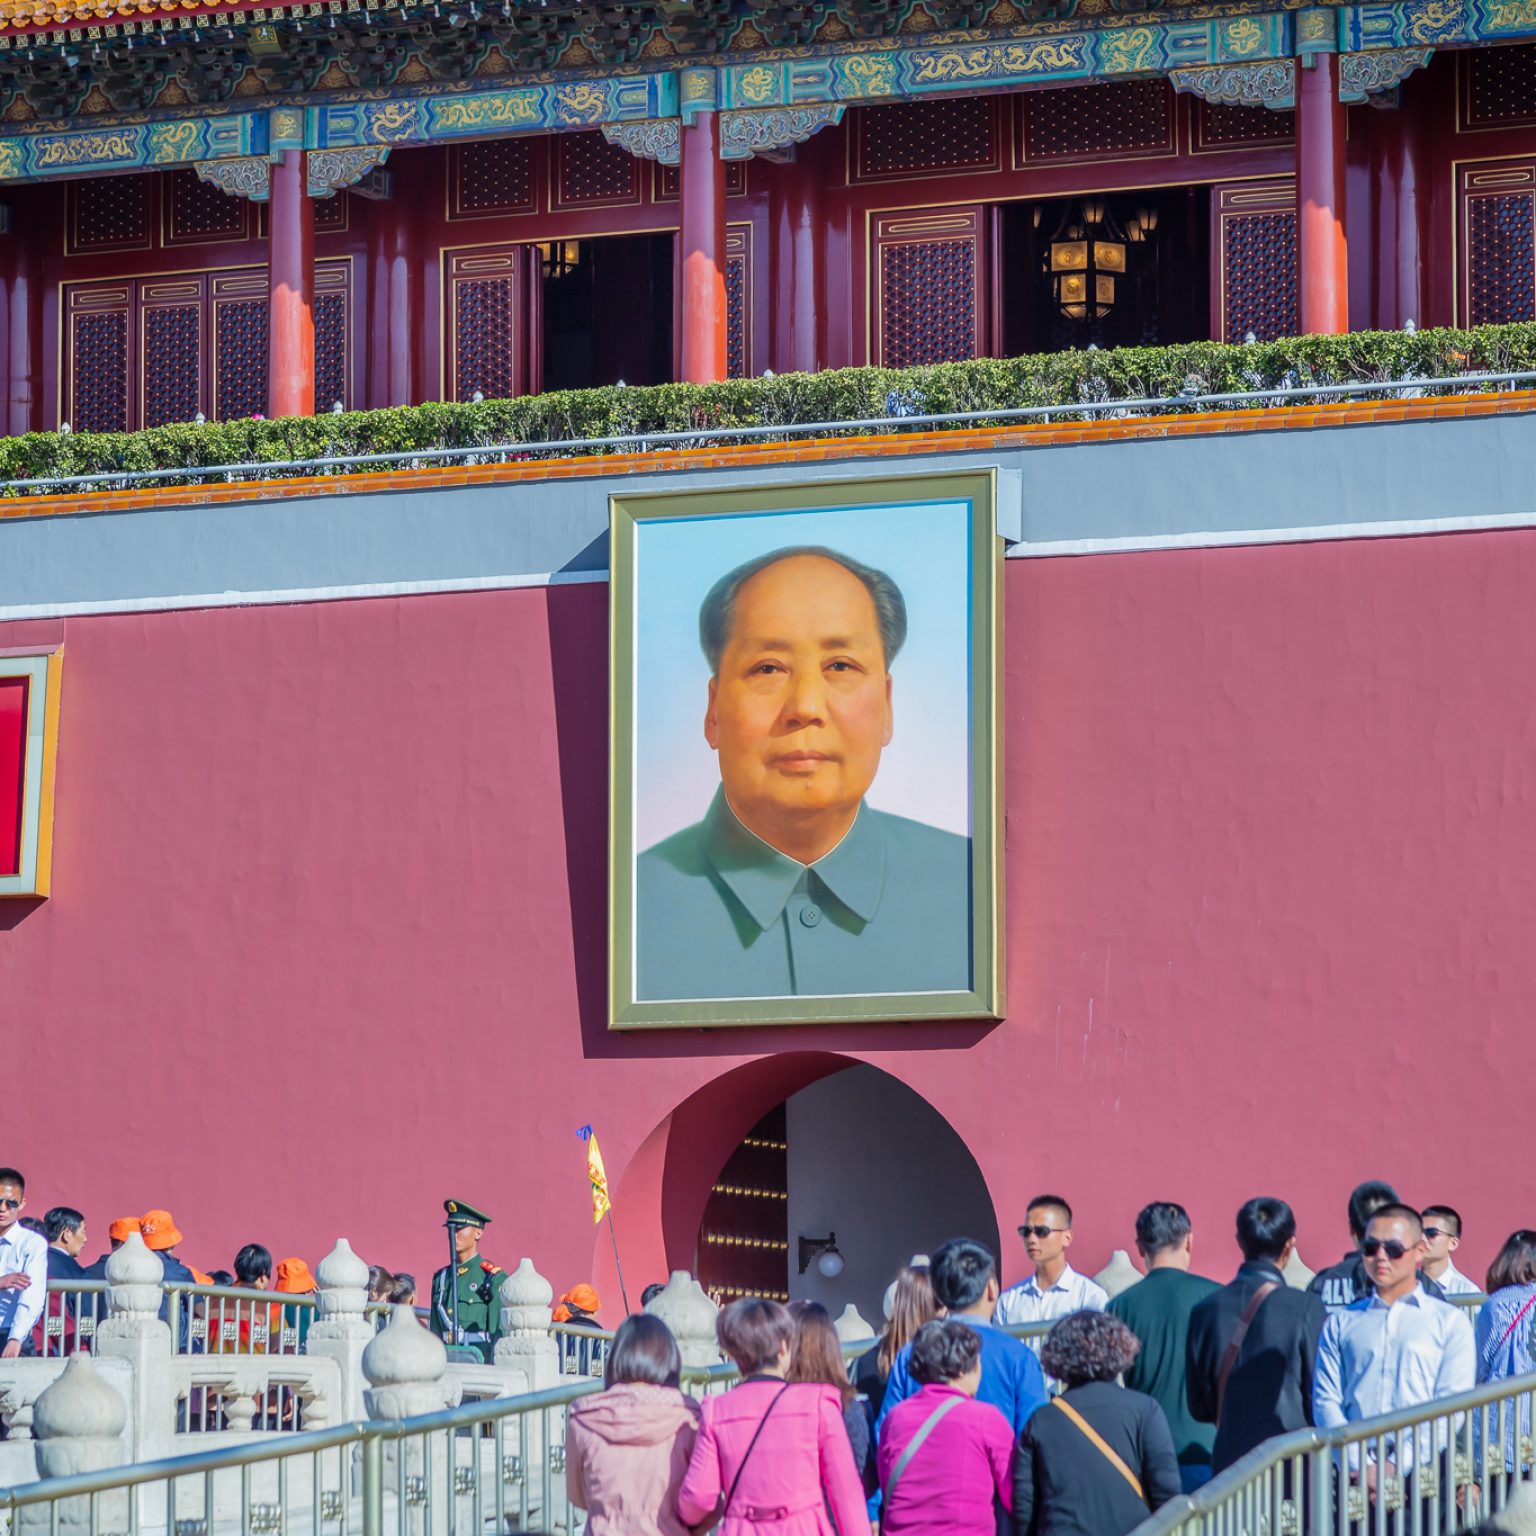 2016, Asien, China, Mao, Peking, Tiananmen